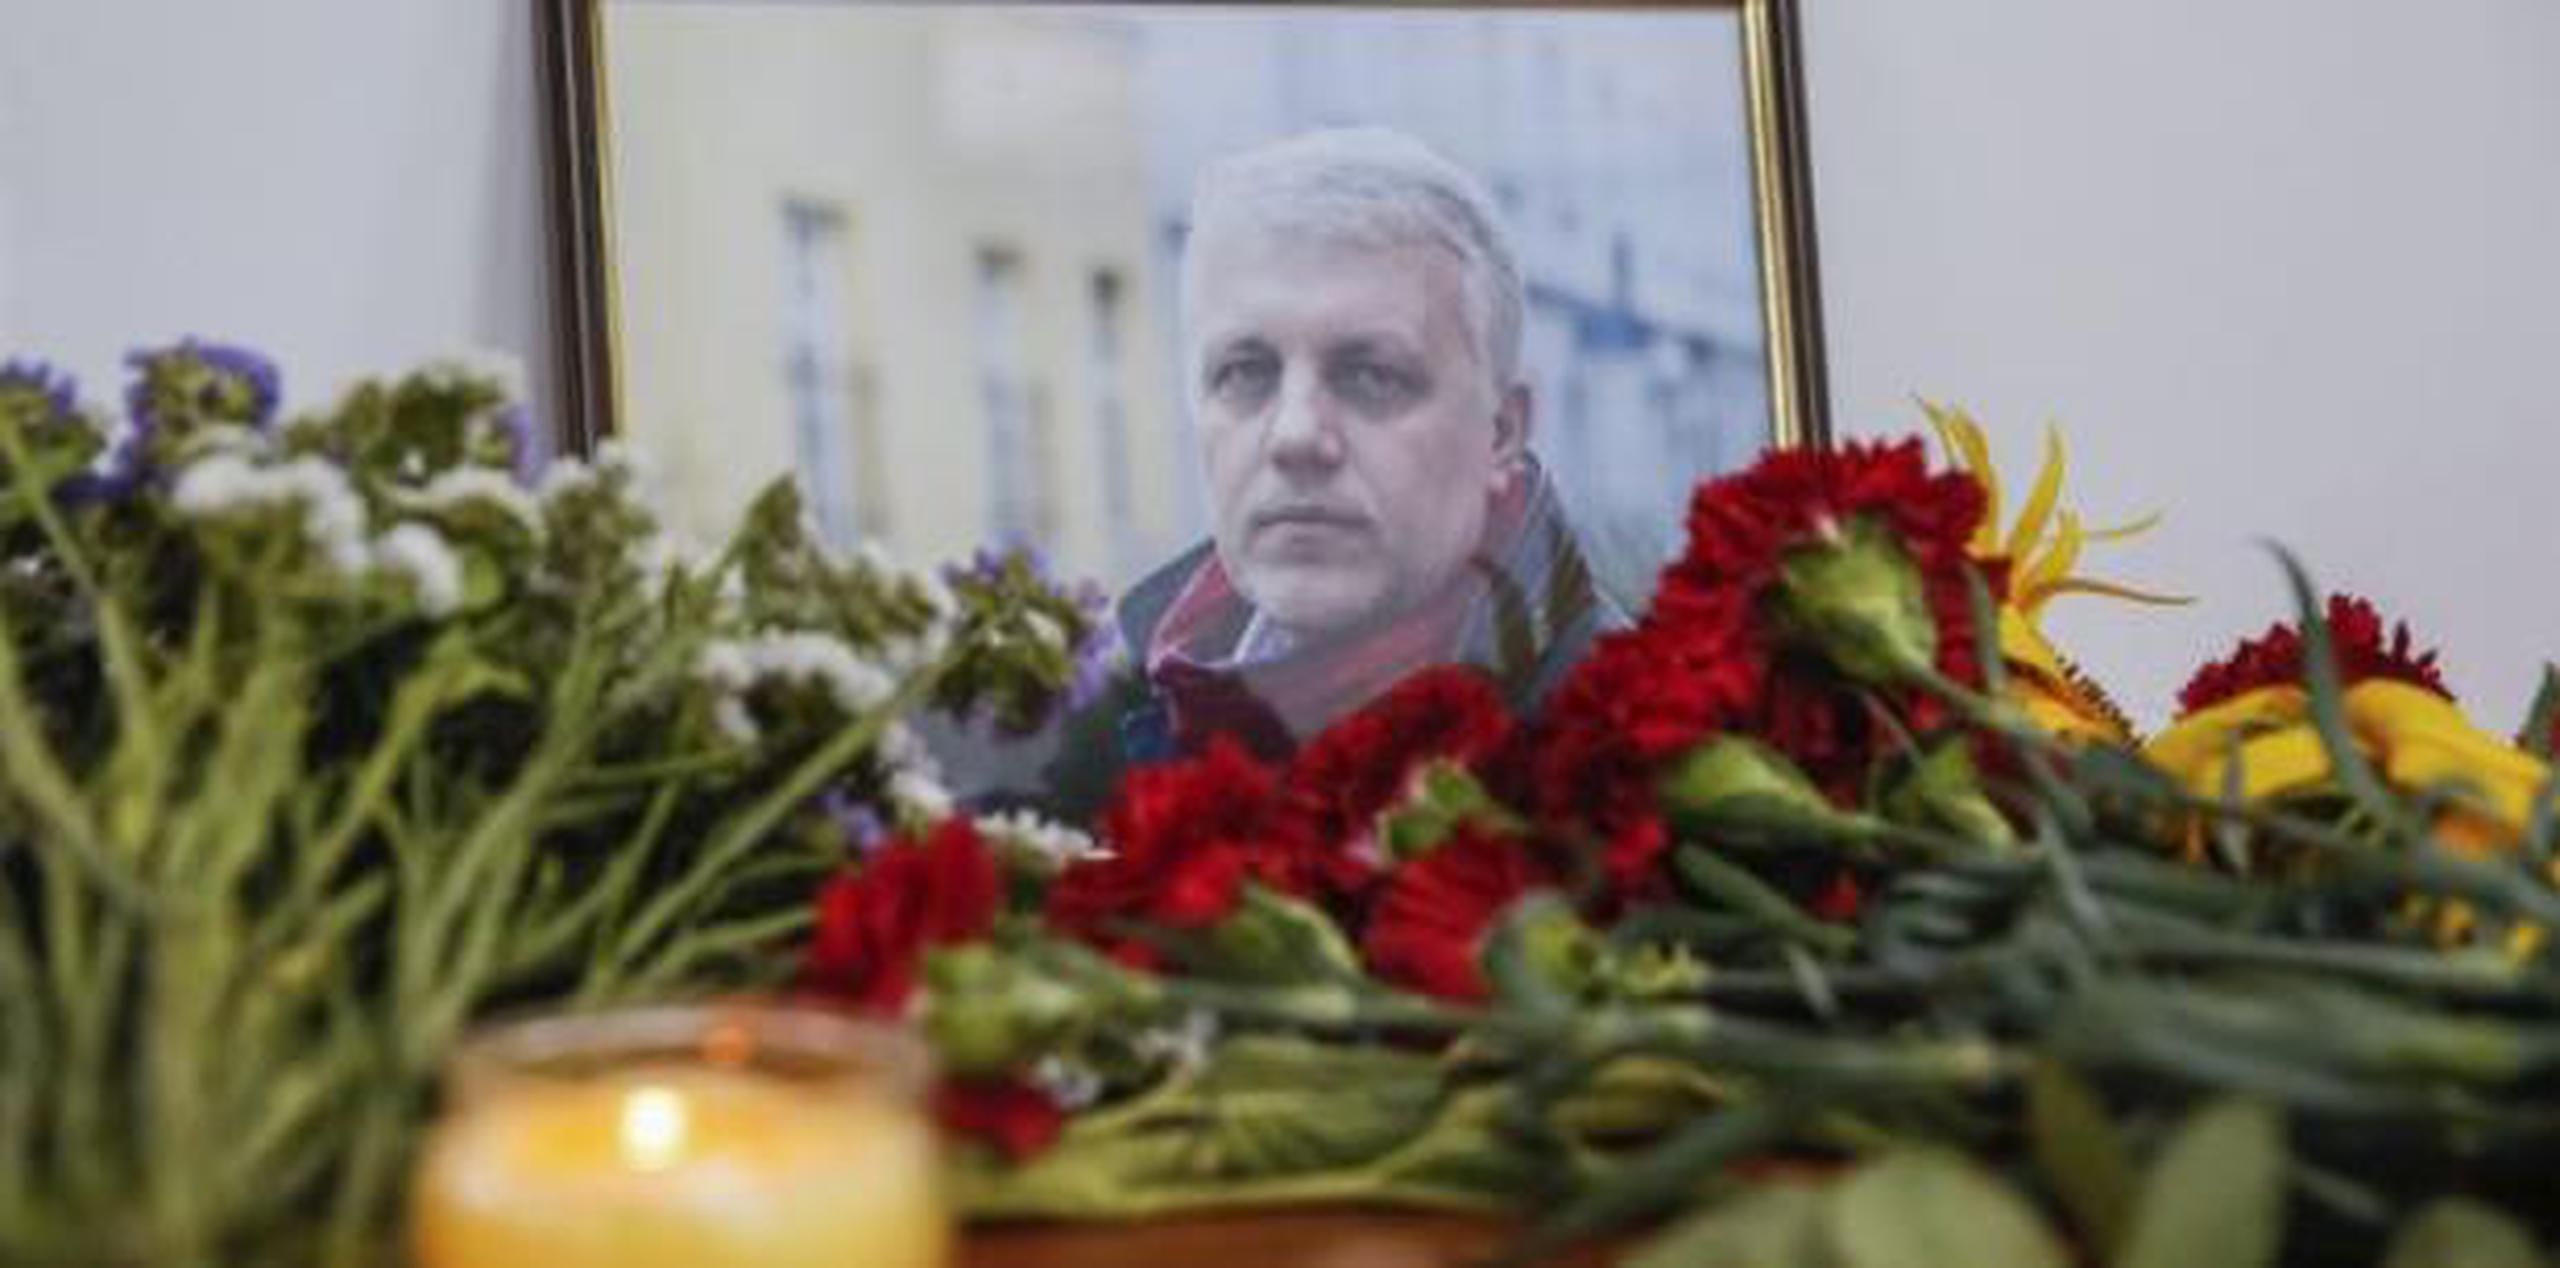 El periodista Pável Sheremet, quien murió al estallar el automóvil que conducía en el centro de Kiev, informó el periódico digital Ukrainska Pravda. (Archivo)